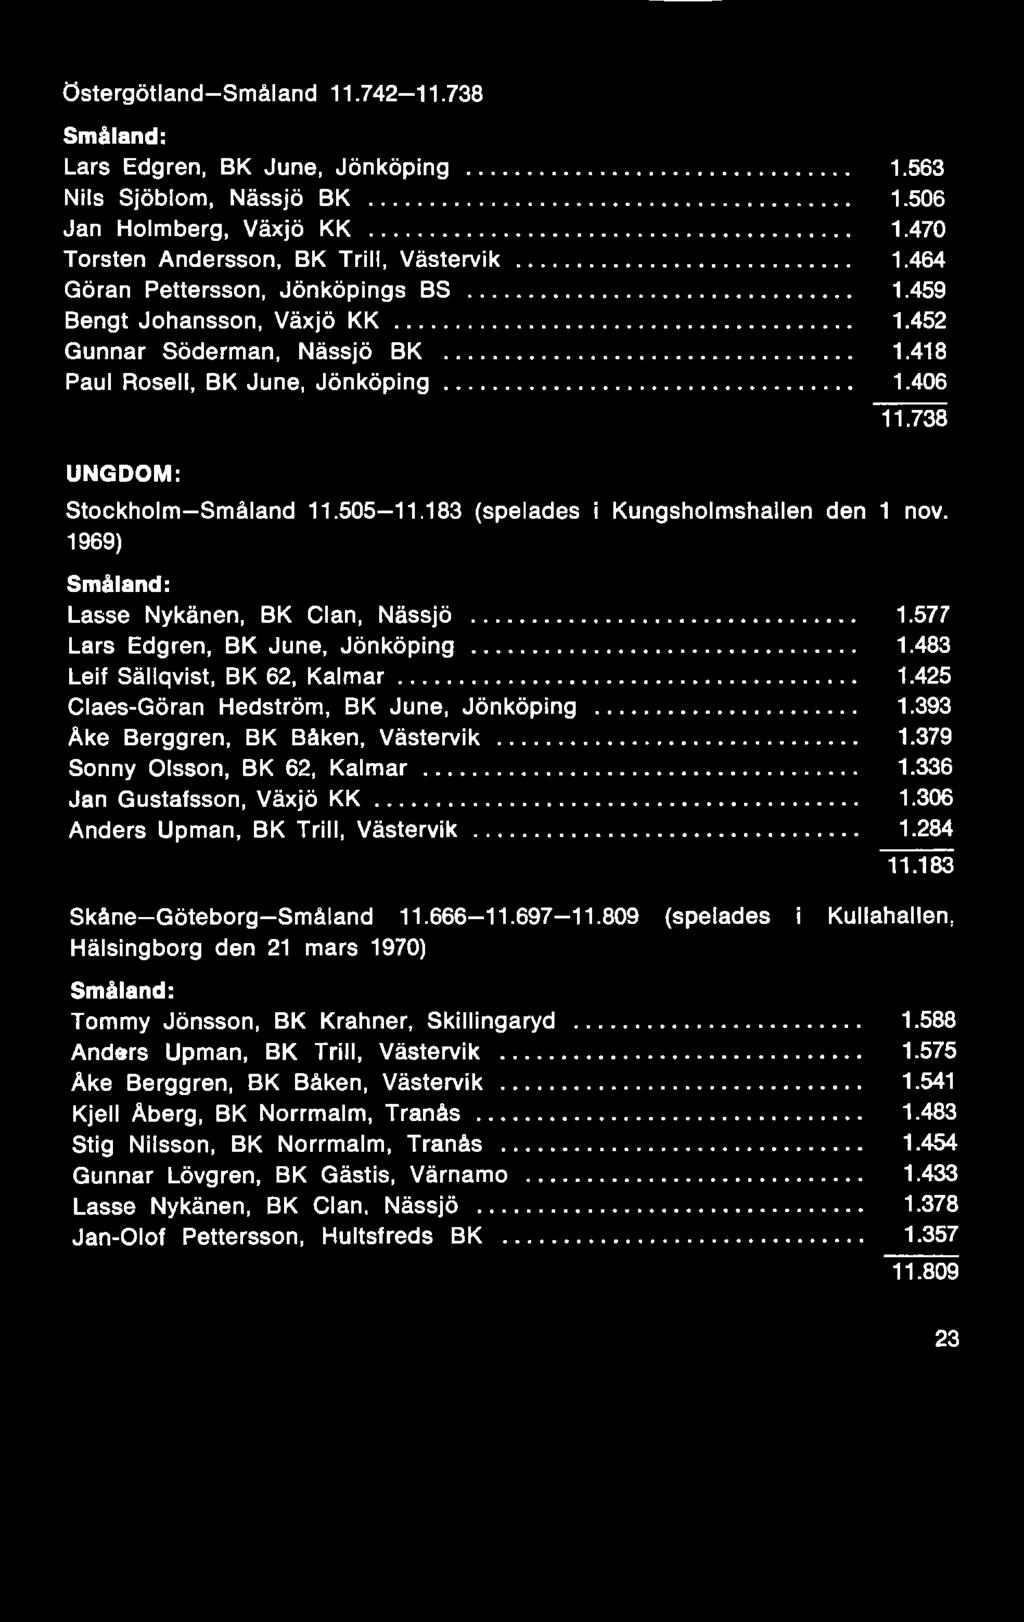 666-11.697-11.809 (spelades i Kullahallen, Hälsingborg den 21 mars 1970) Småland: Tommy Jönsson, BK Krahner, Skillingaryd... 1.588 Anders Upman, BK Trill, Västervik... 1.575 Åke Berggren, BK Båken, Västervik.